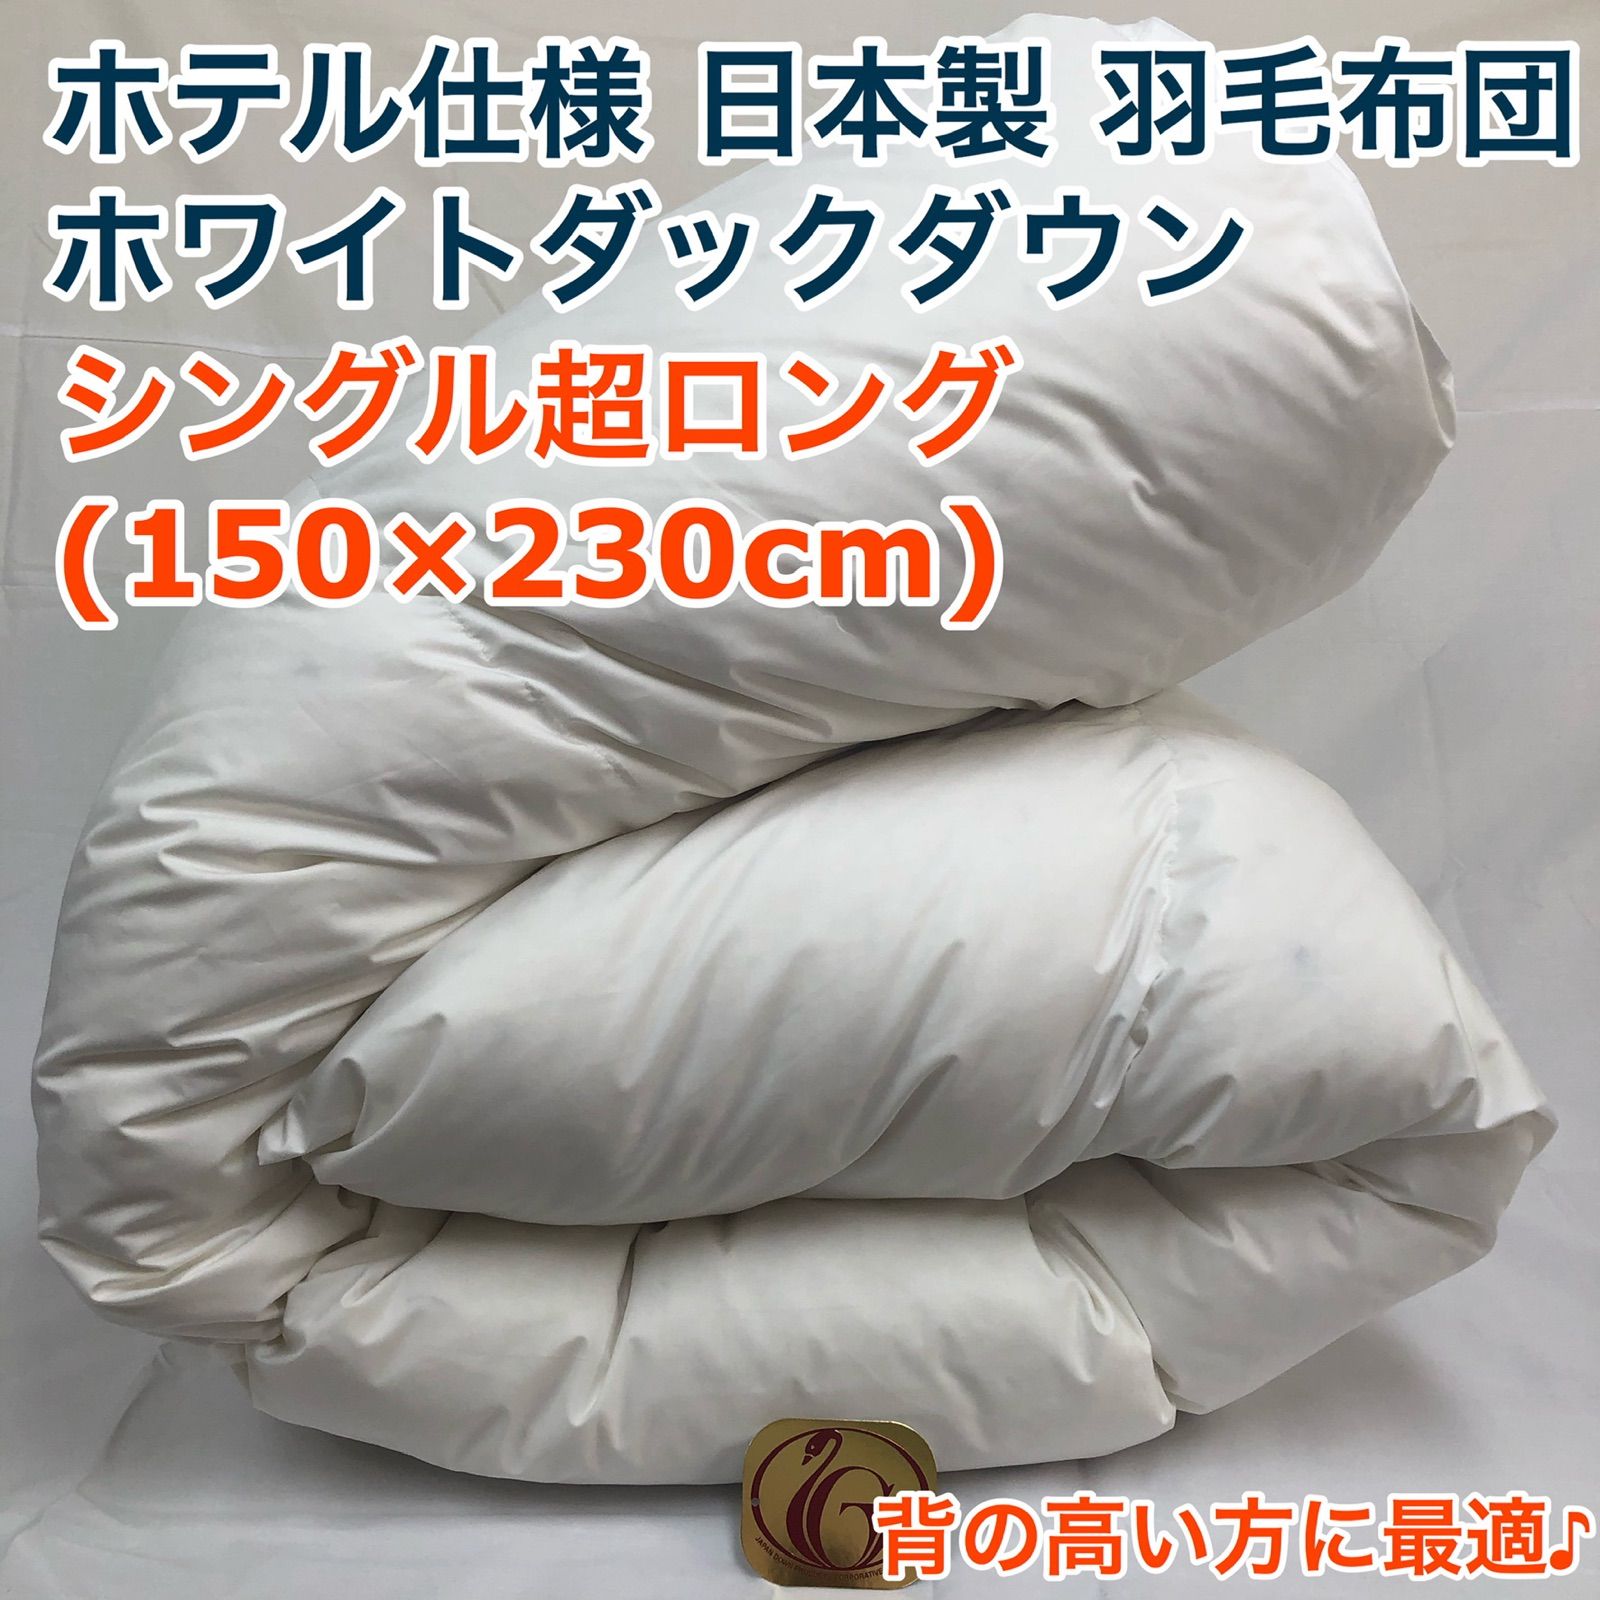 羽毛布団 シングル超ロング ニューゴールド 白色 日本製 150×230cm-